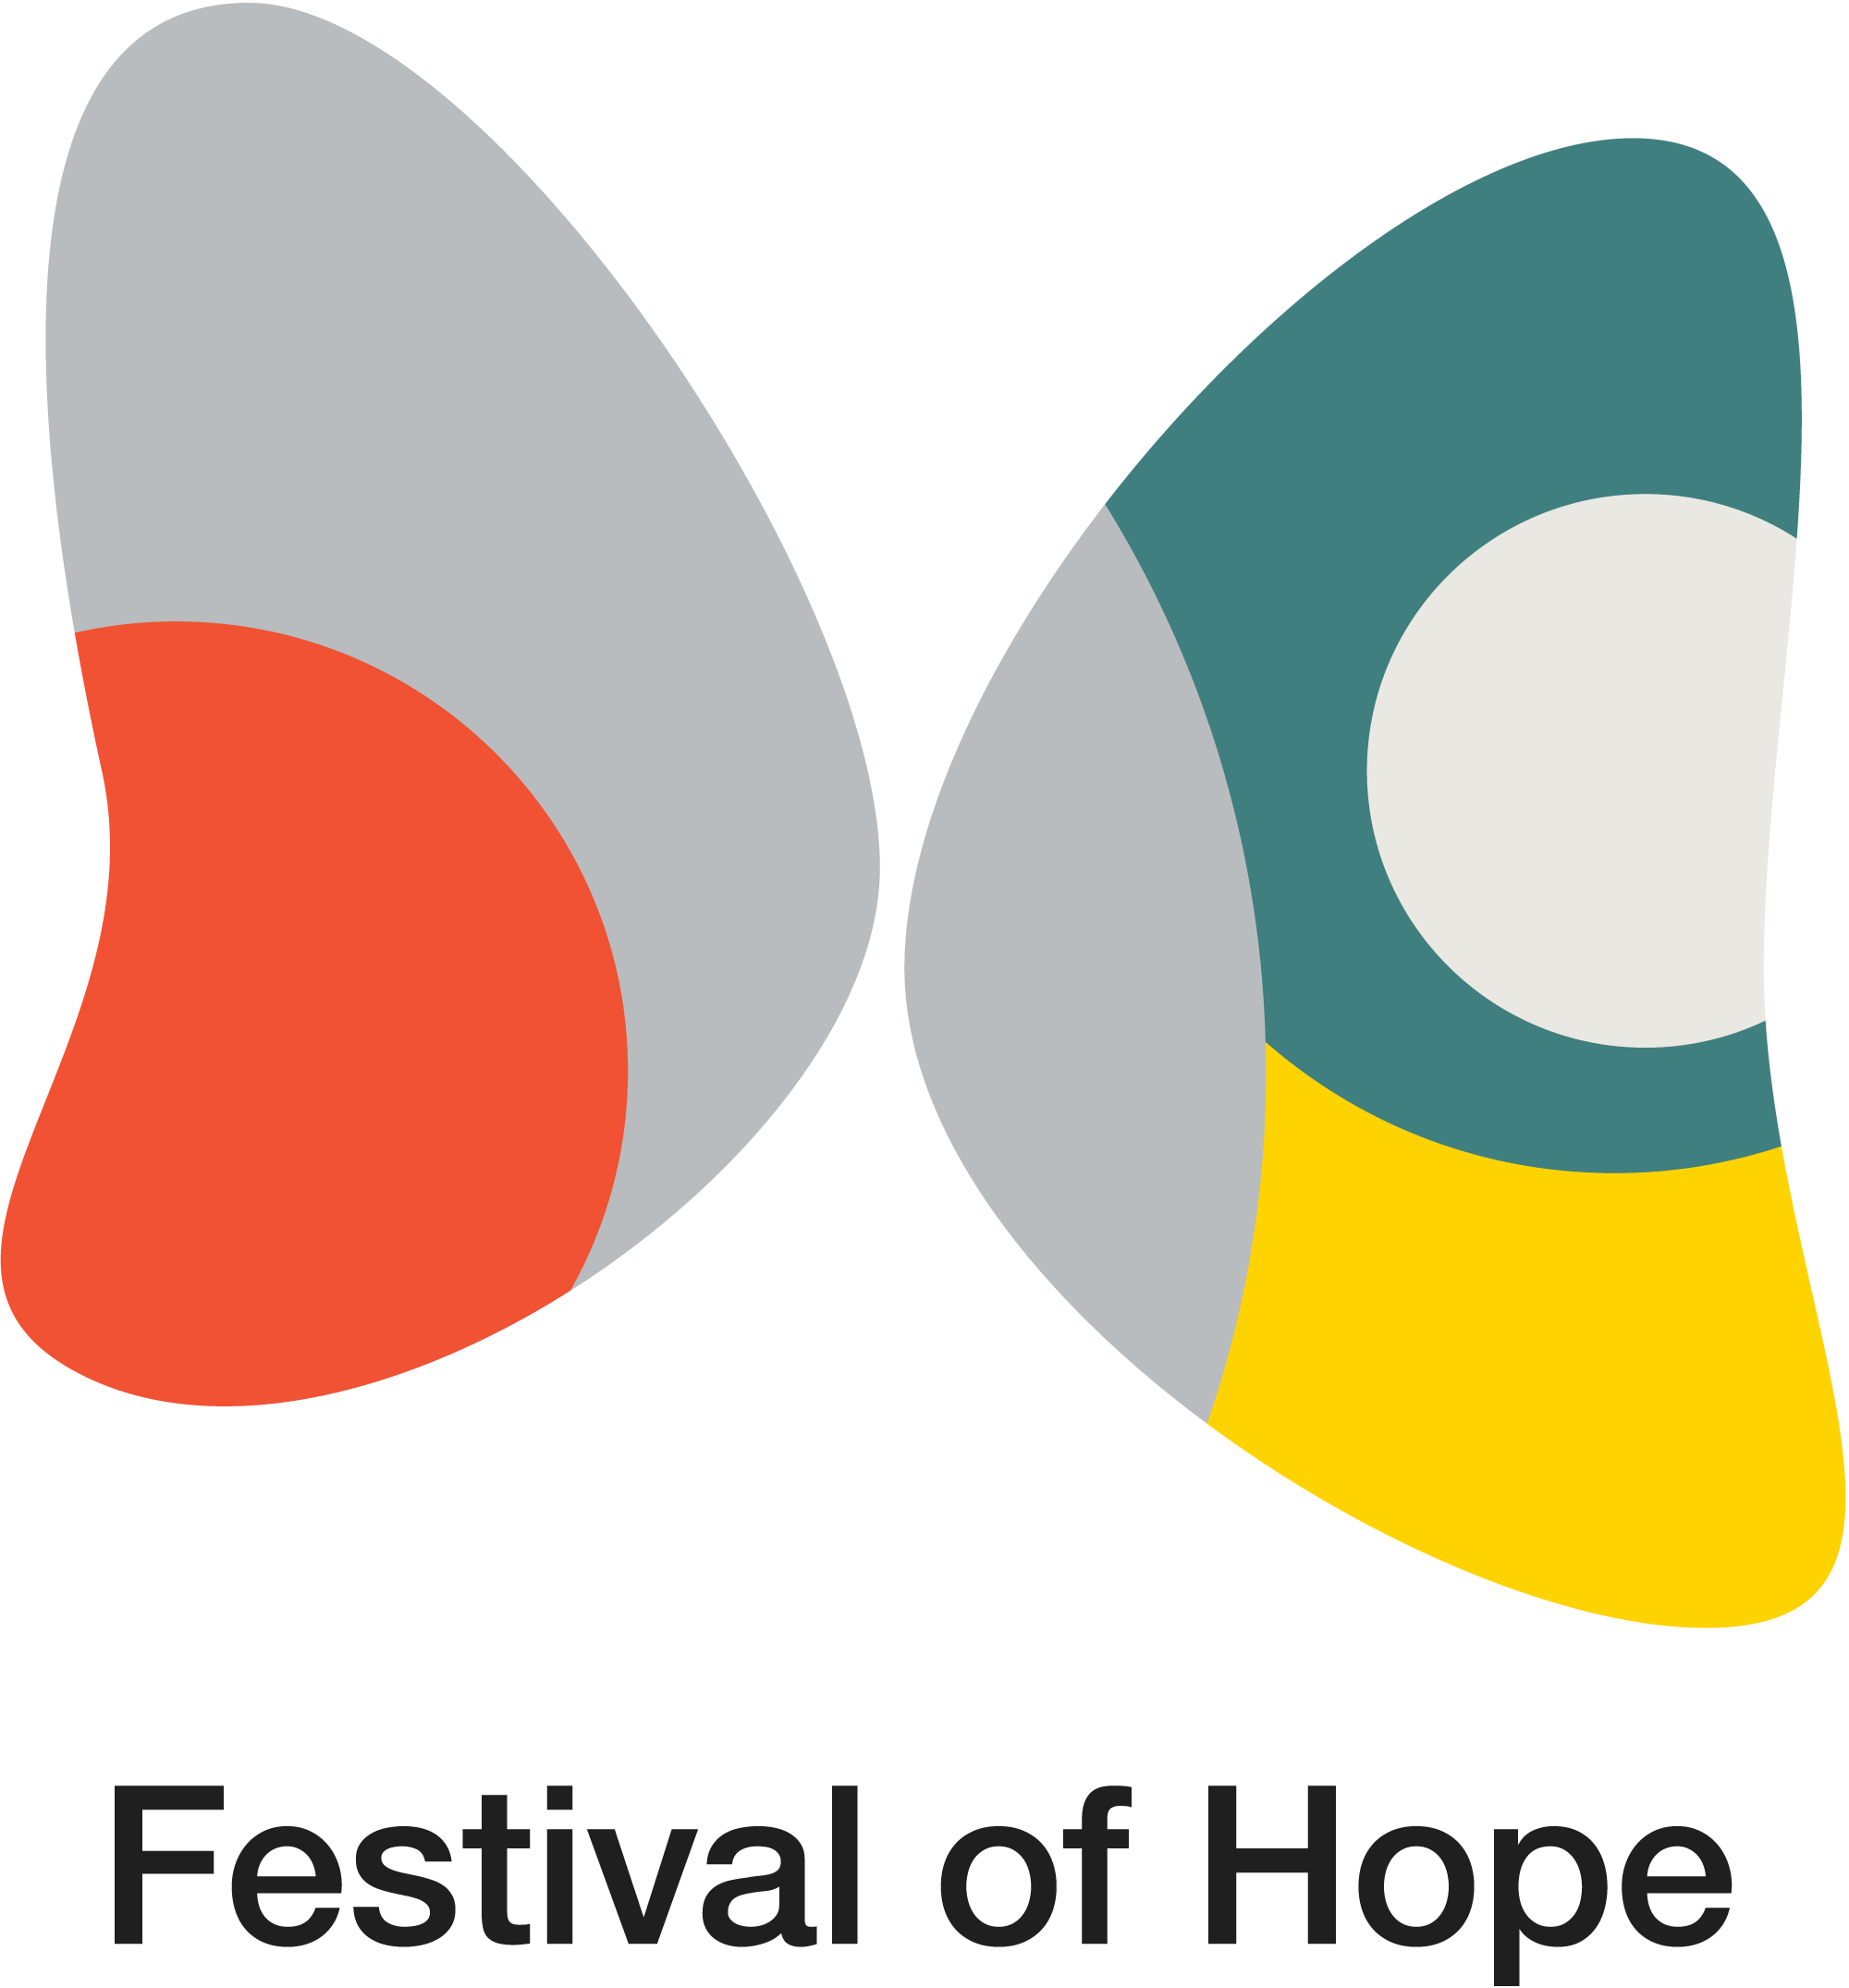 Festival of Hope Logo_Square